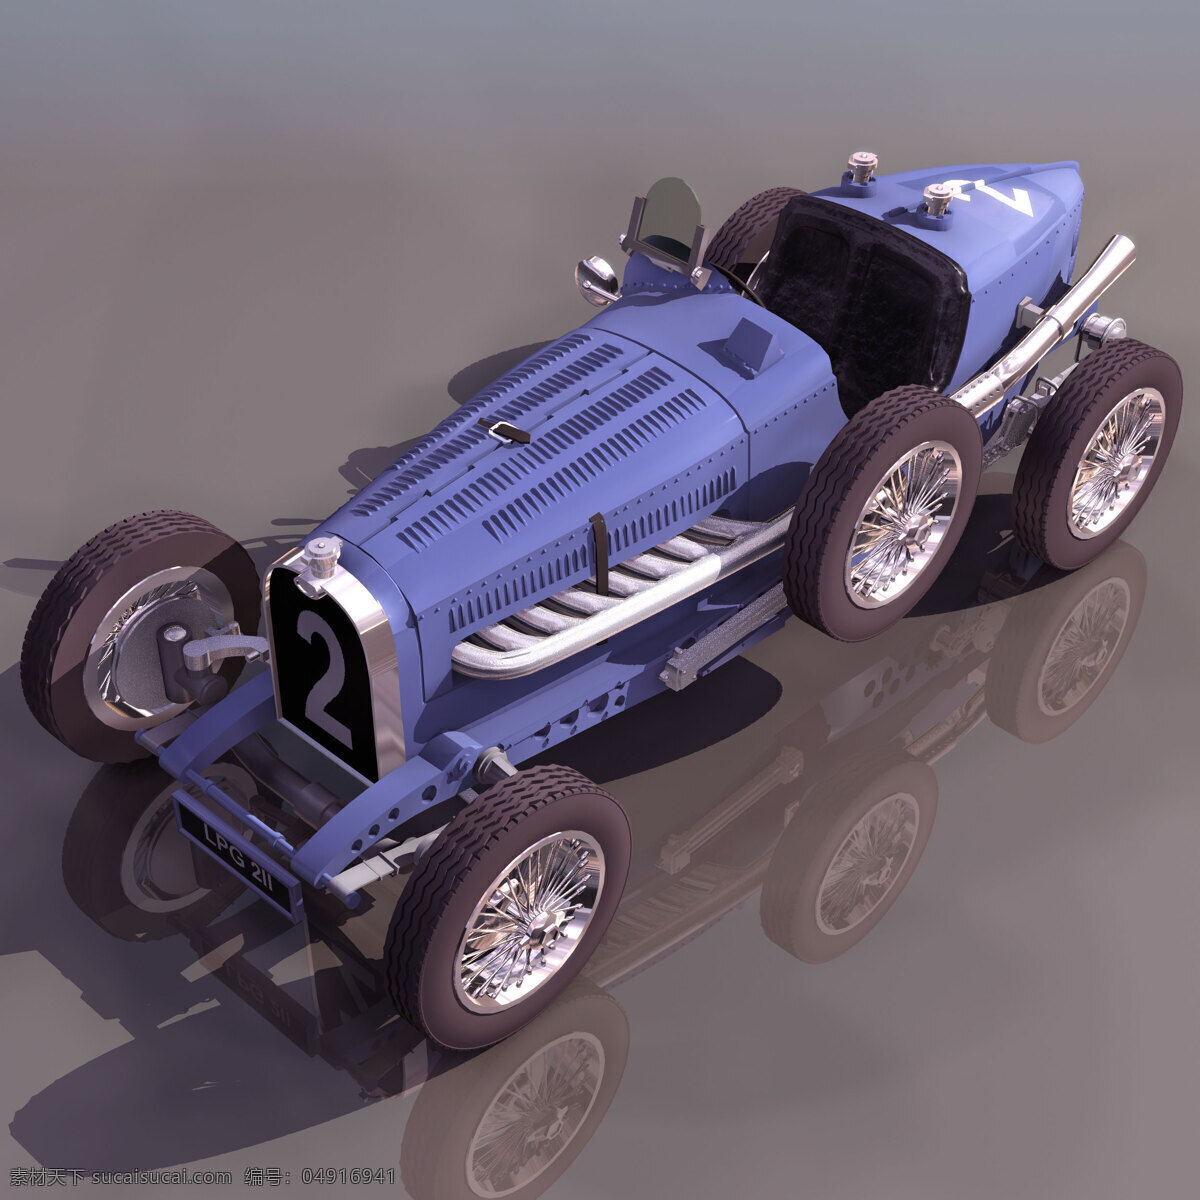 小轿车 模型 bugatti 小轿车模型 机动车辆 赛车跑车 3d模型素材 电器模型